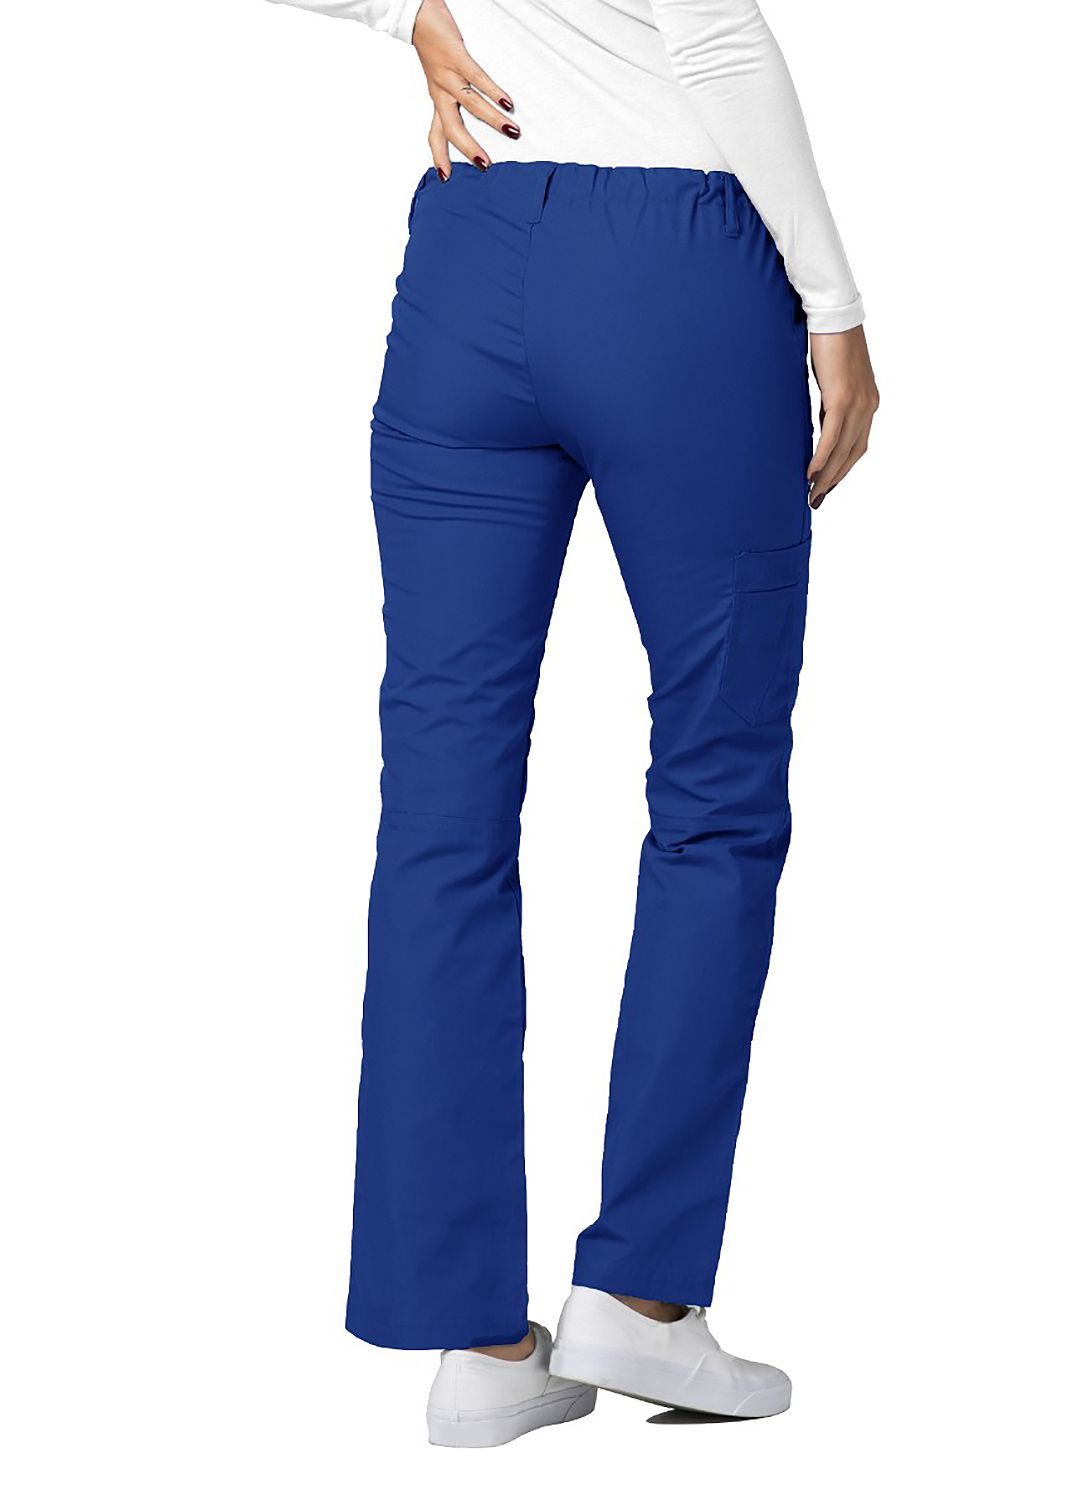 Low-Rise Drawstring Pants by AdarXS-3XL  / Royal Blue